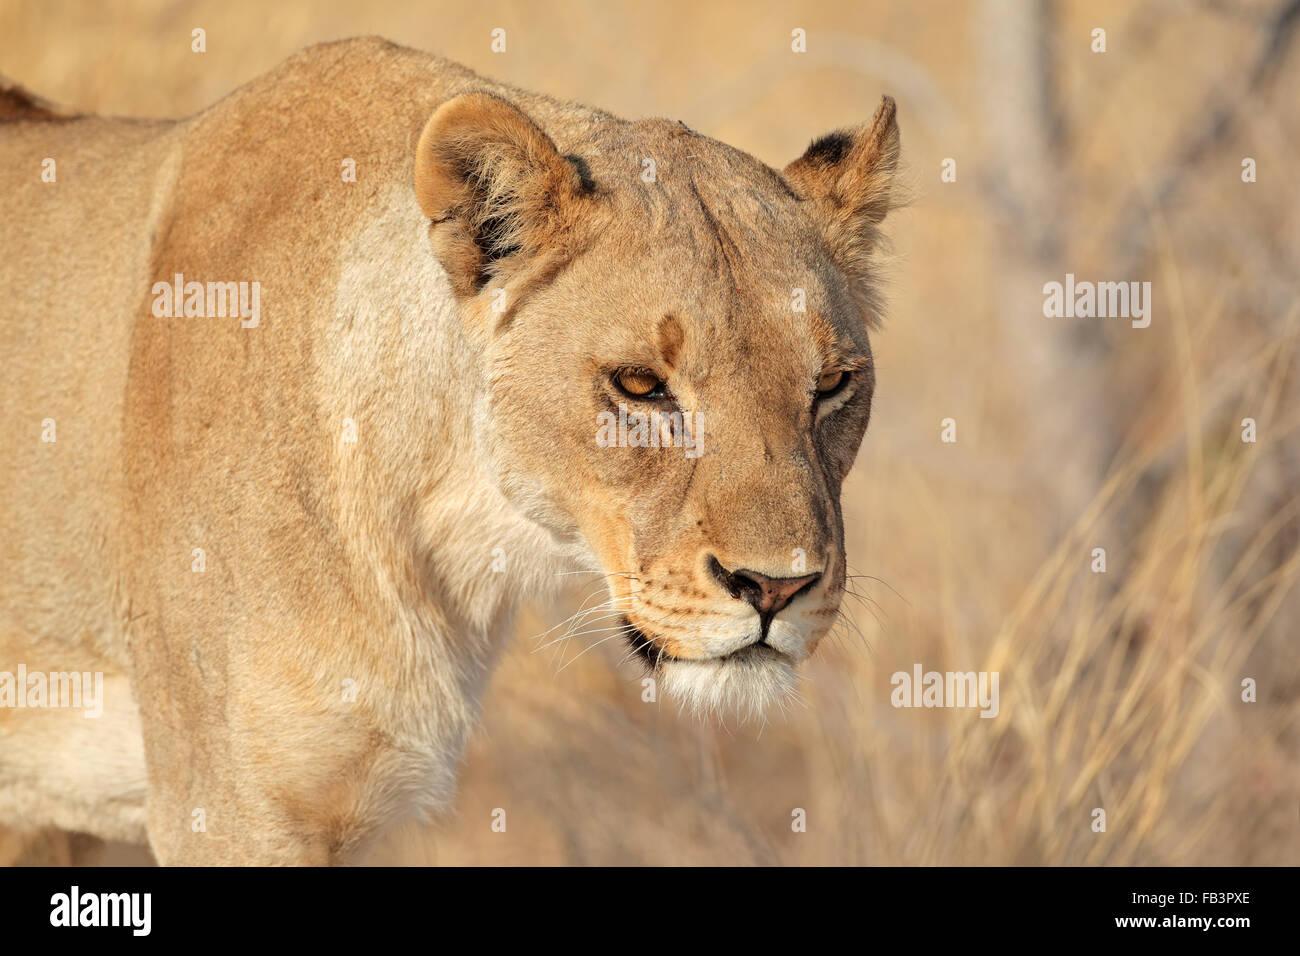 Retrato de una mujer león africano (Panthera leo), el Parque Nacional de Etosha, Namibia Foto de stock